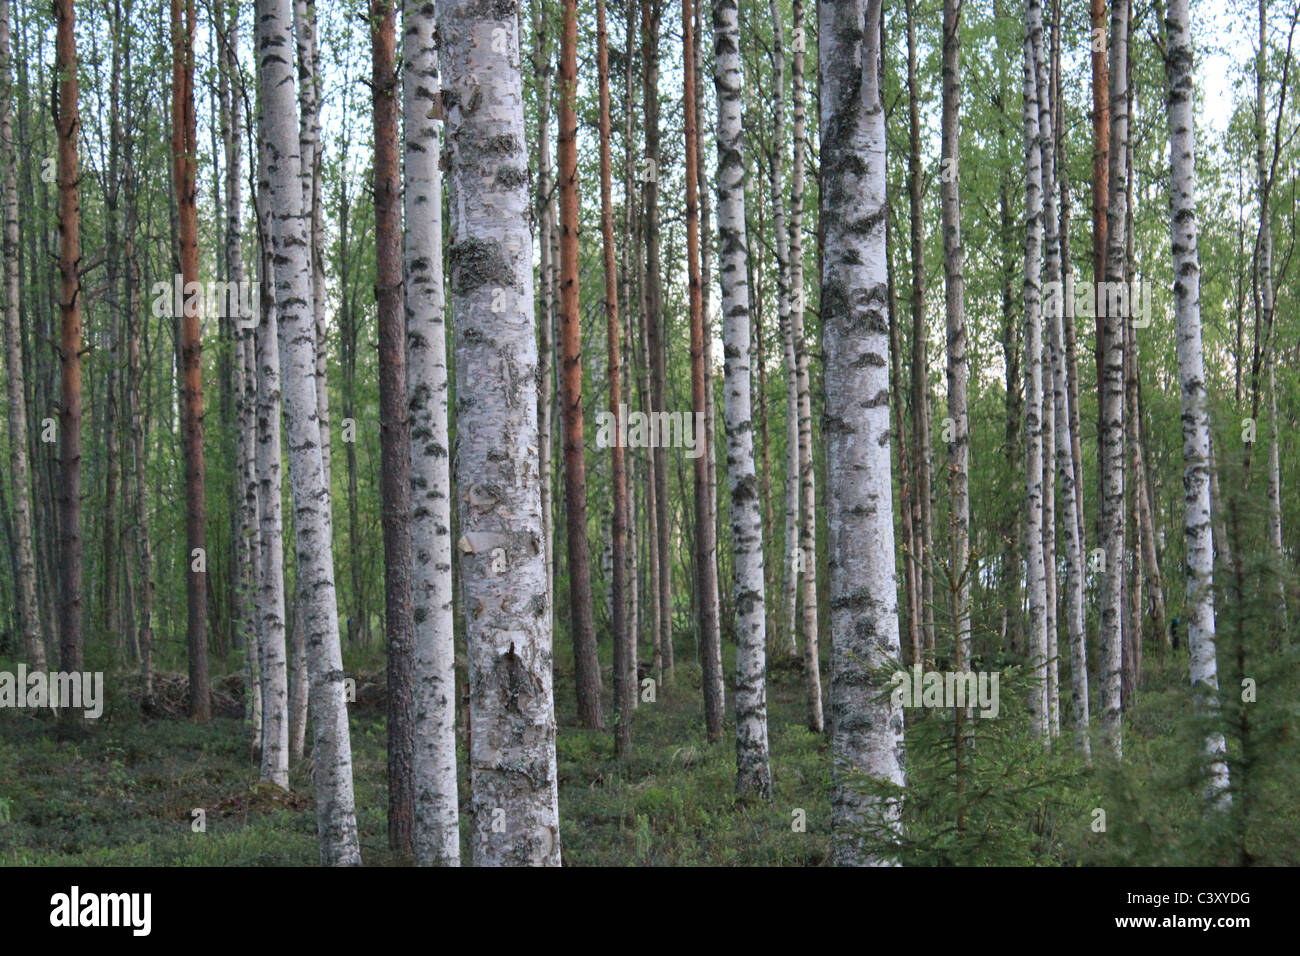 Finnischer Wald mit Birken und Kiefern. Birke steht symbolisch für Anfänge, Erneuerung & Neuanfang. Stockfoto